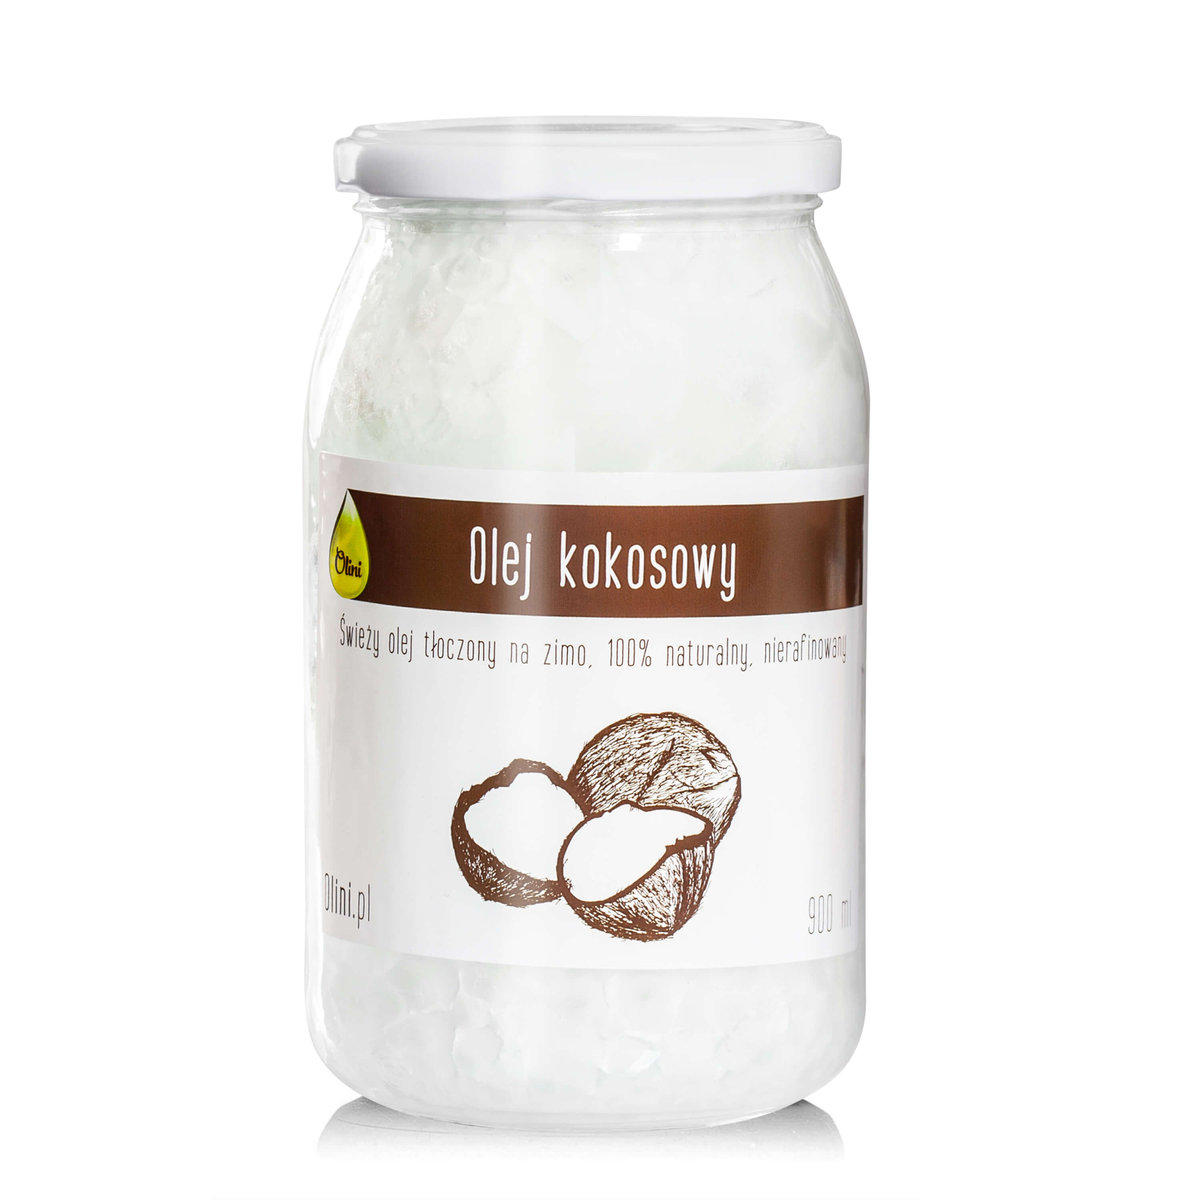 Olej kokosowy nierafinowany Olini 900 ml